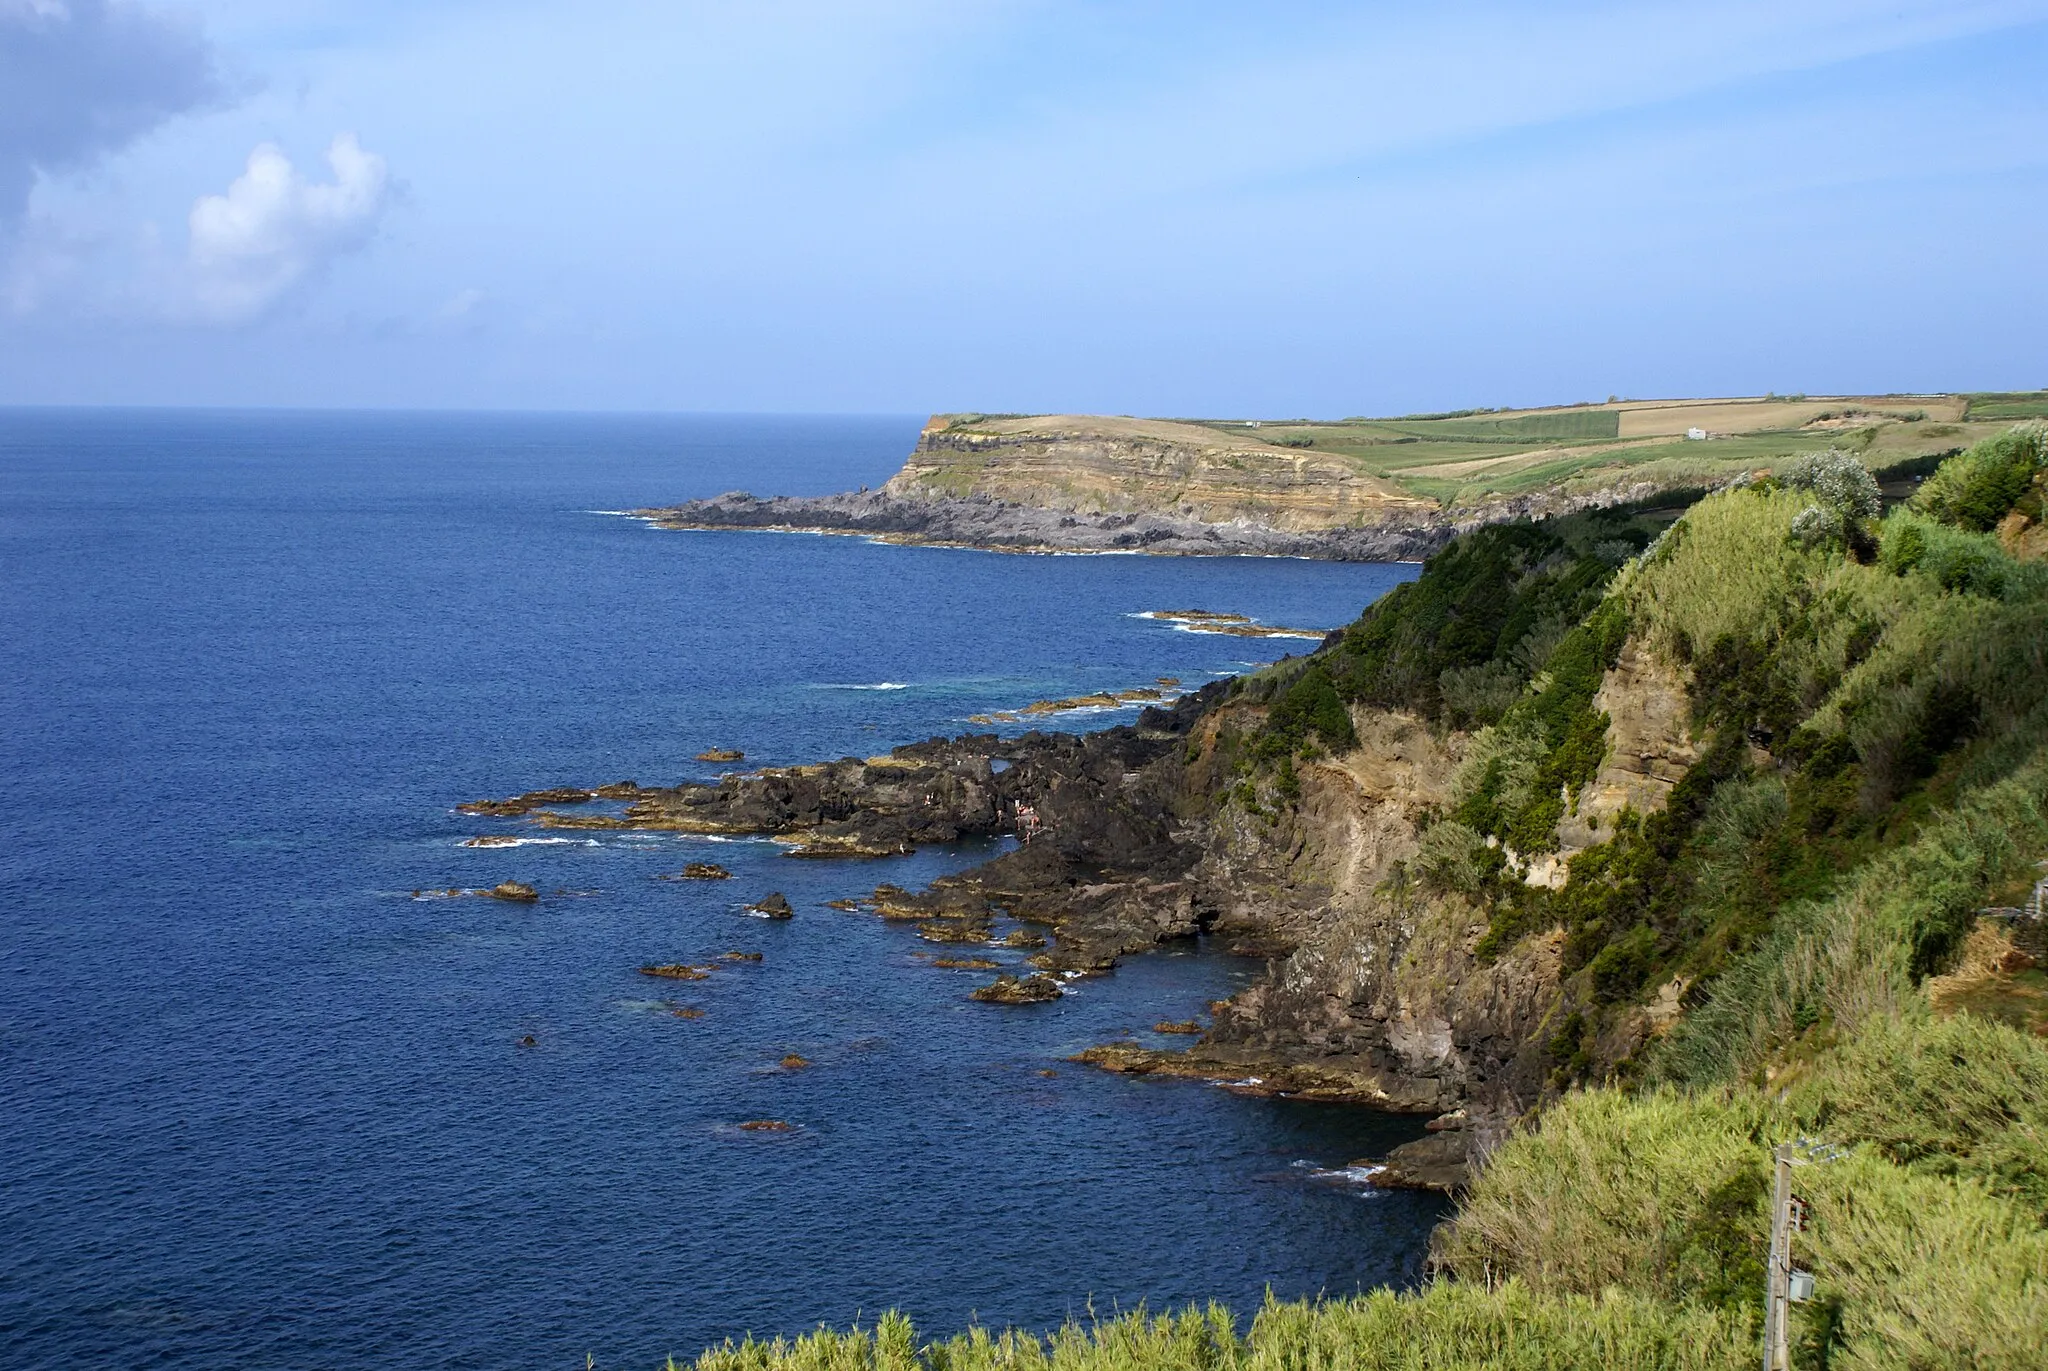 Photo showing: Costa norte da ilha Terceira, vista do Miradouro dos Moinhos, Quatro Ribeiras, Praia da Vitória, ilha Terceira, Açores